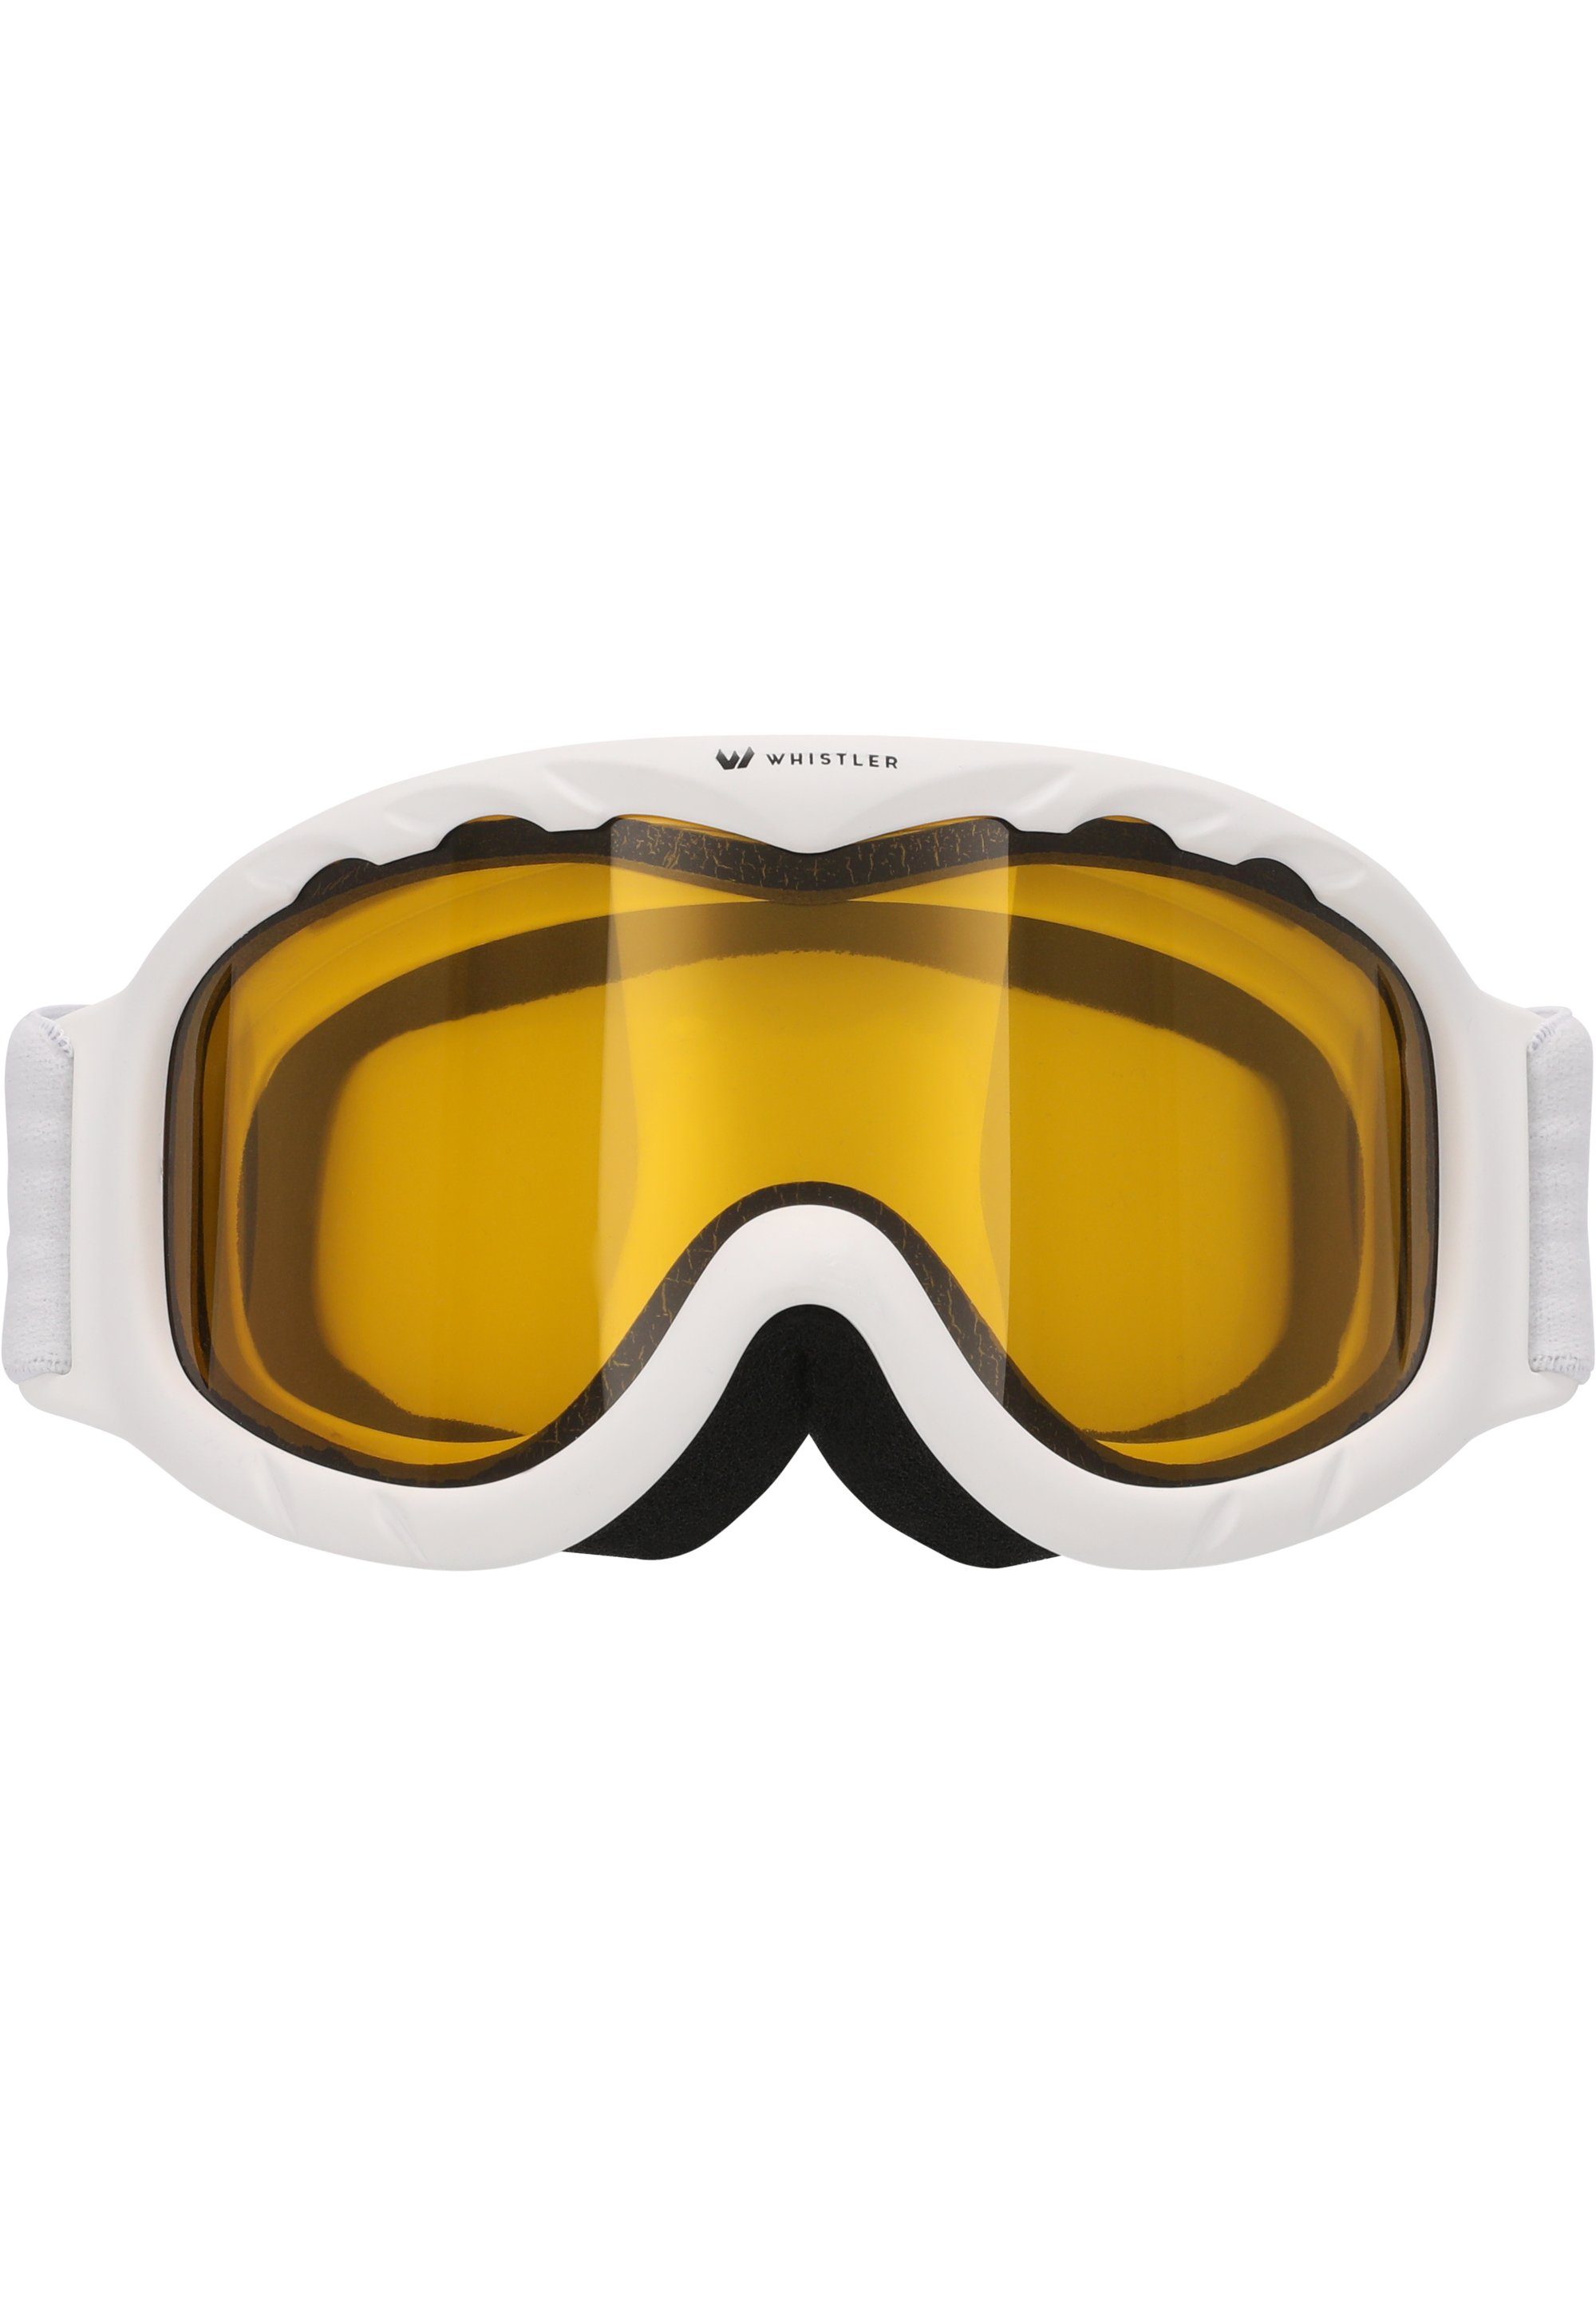 WHISTLER Skibrille WS300 Jr. Ski weiß mit Anti-Fog-Beschichtung Goggle